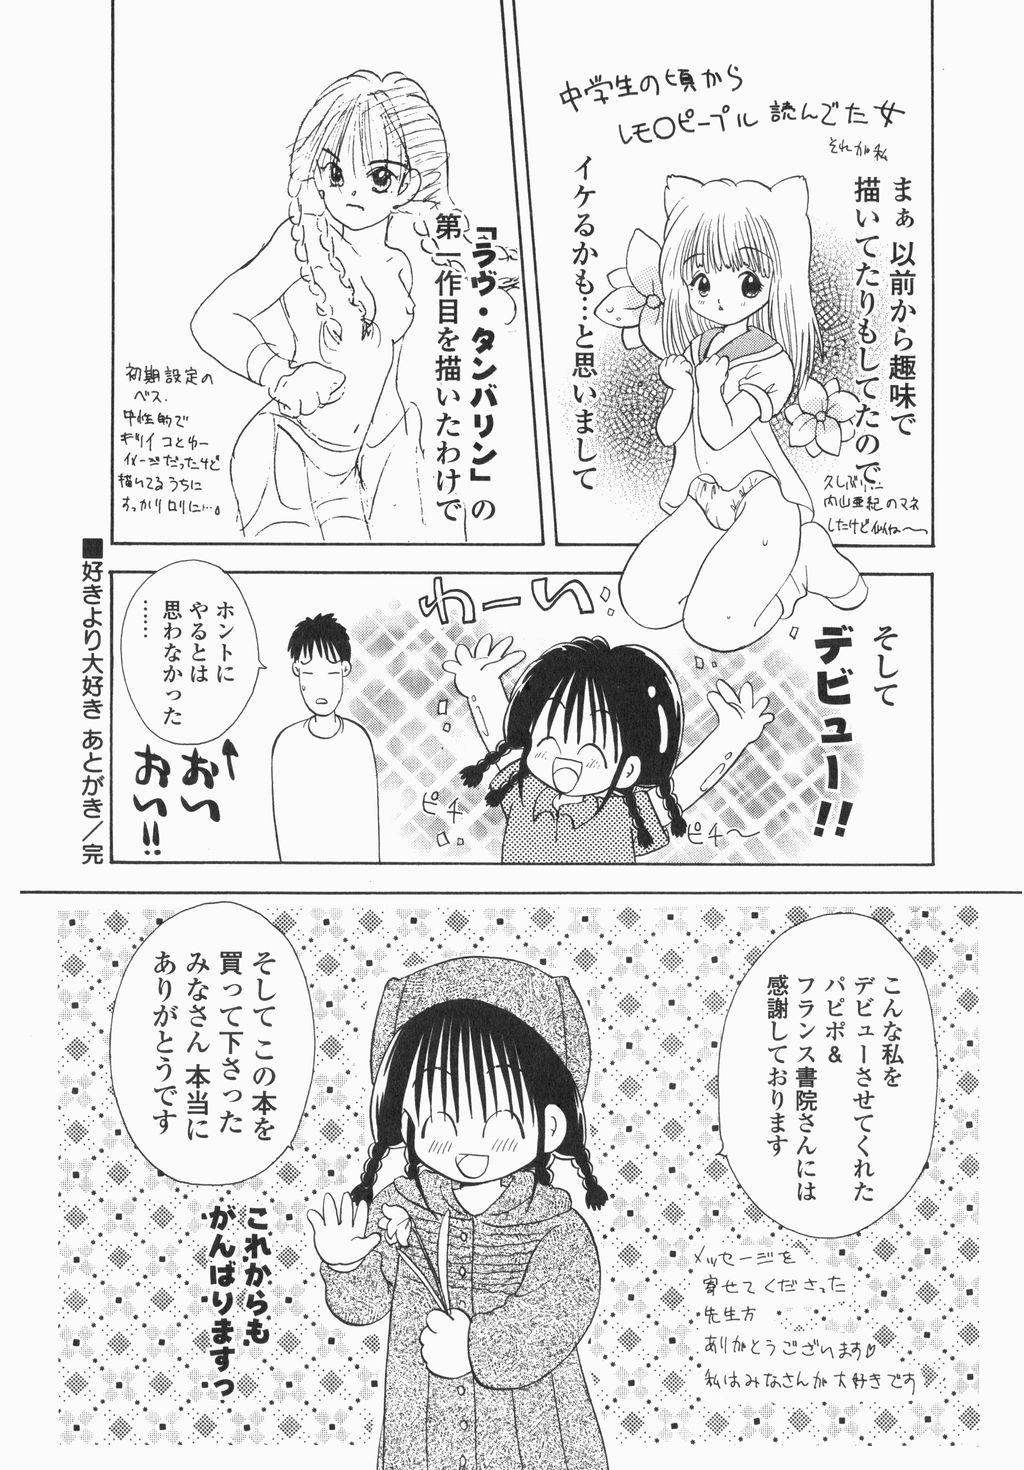 Concha Jitsurokudesuyo! Payapaya Life 1 Kashima - Page 147